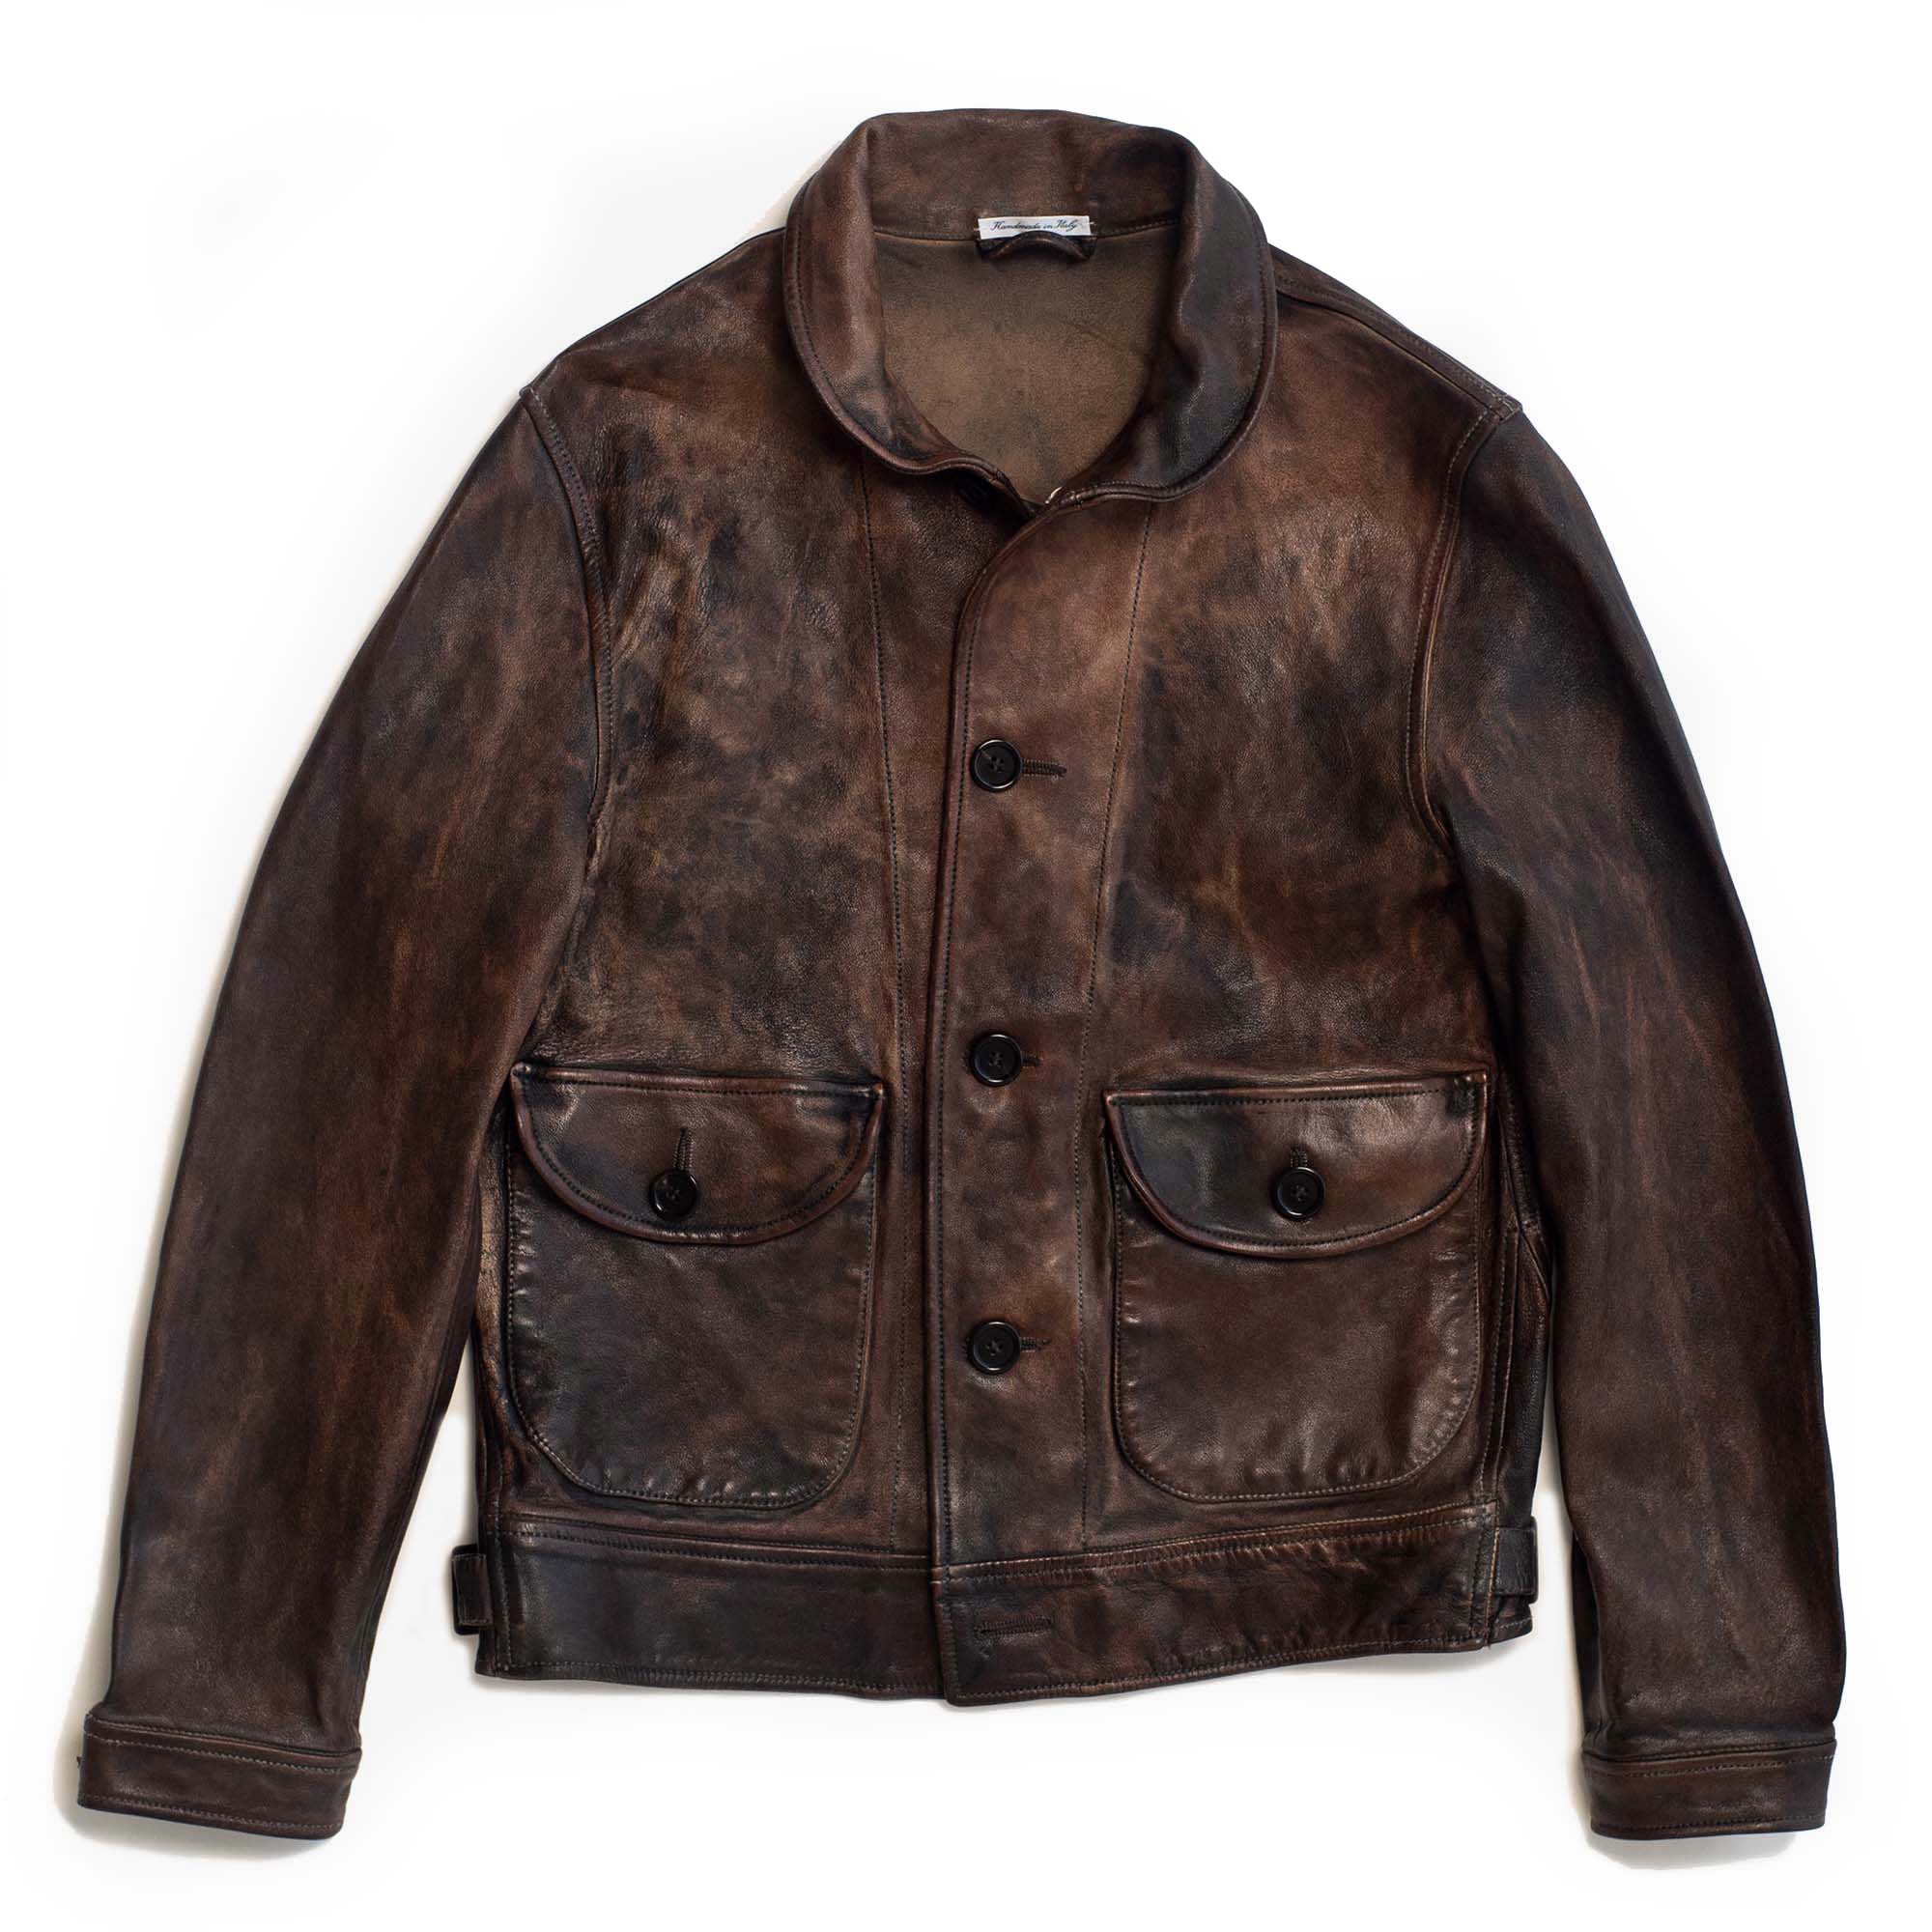 "Cossack" Bruciato Leather Jacket